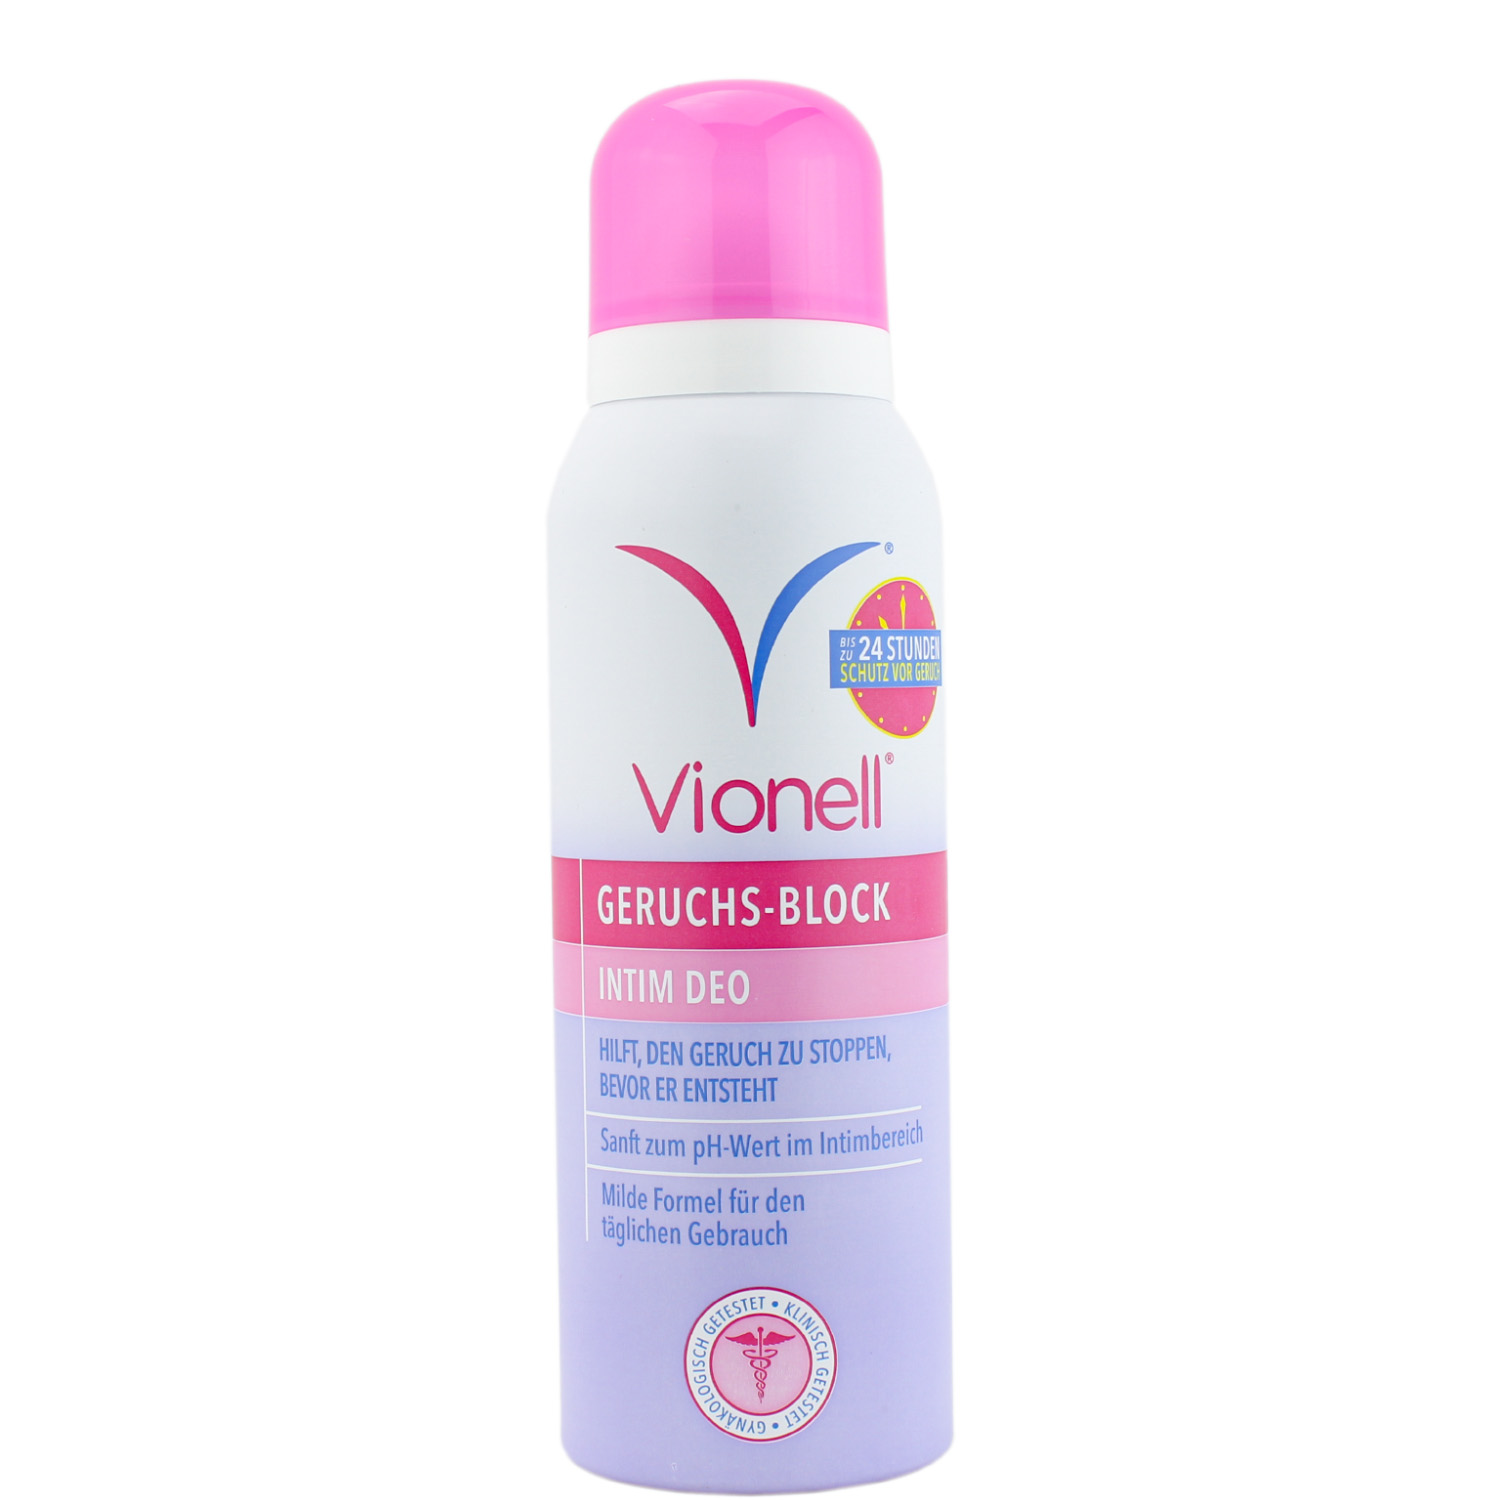 Vionell Geruchs-Block Intim Deodorant Spray 125ml